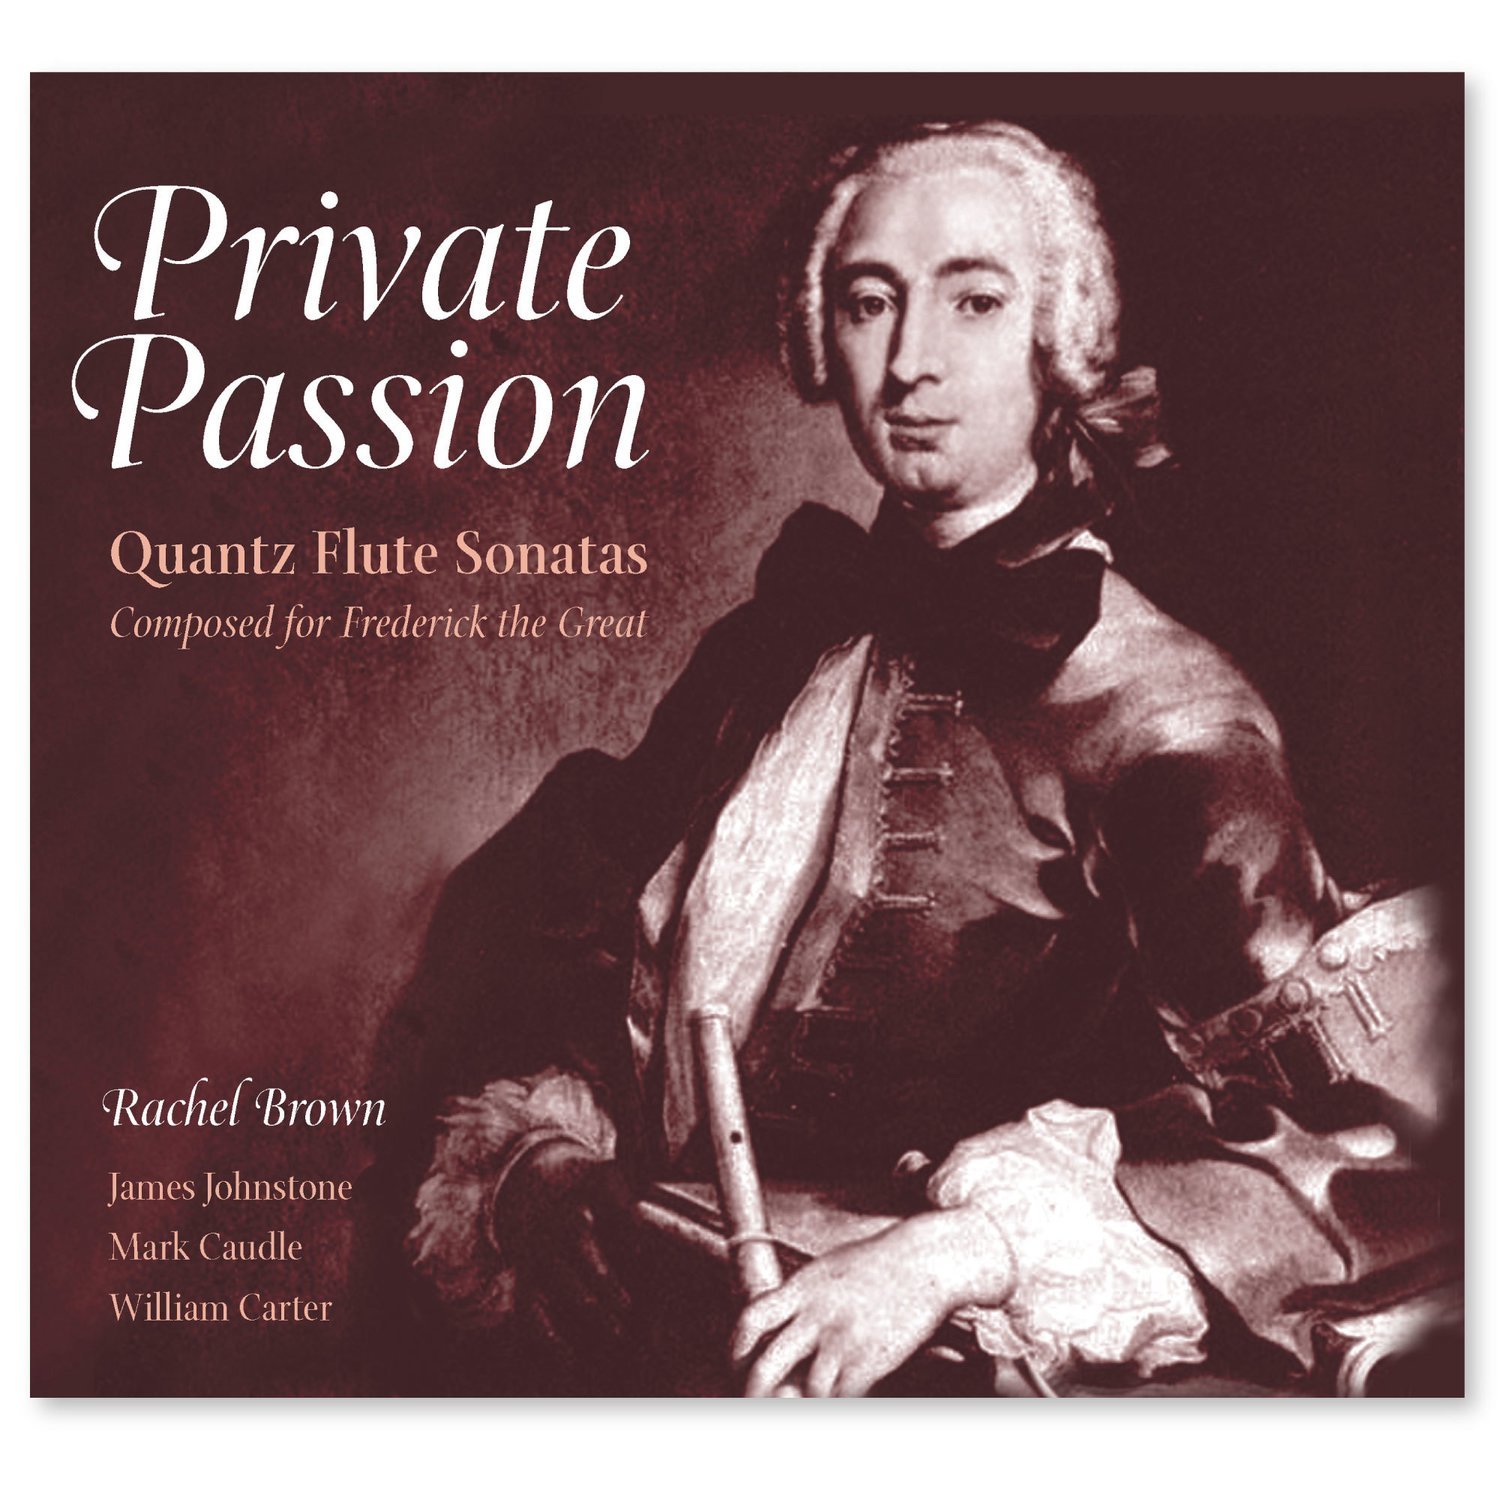 Private Passion - Quantz Flute Sonatas